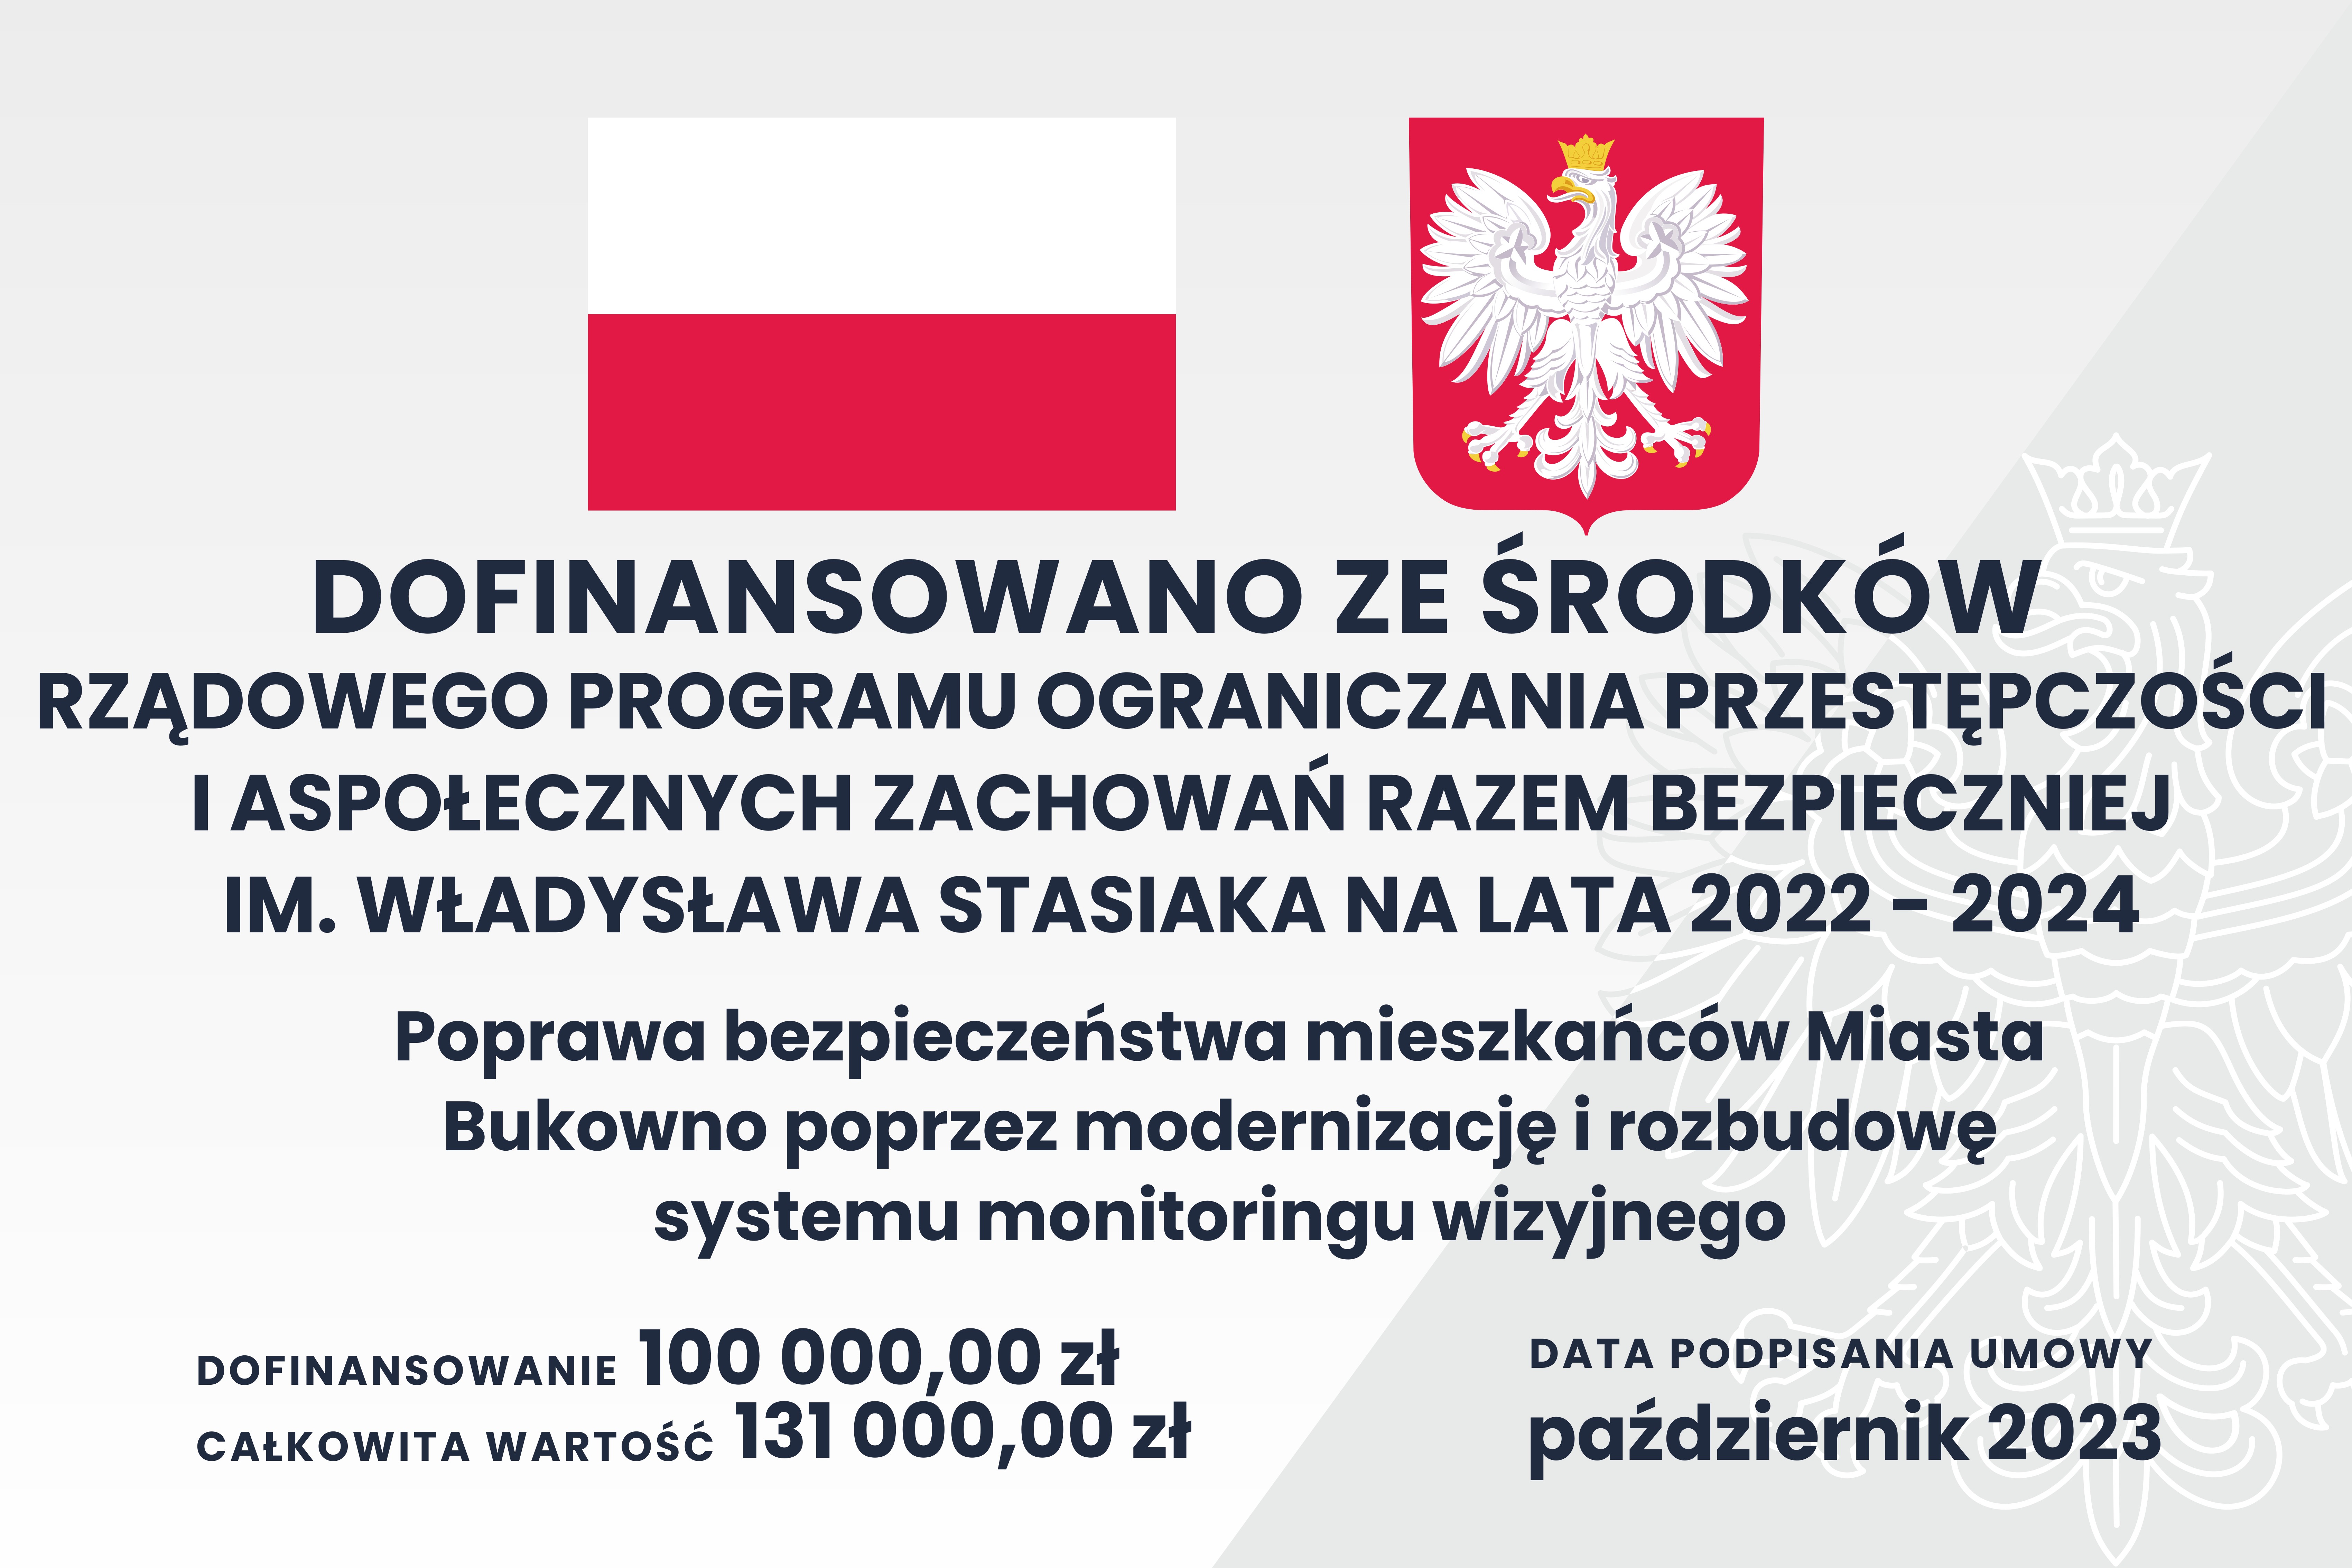 Poprawa bezpieczeństwa mieszkańców Miasta Bukowno poprzez modernizację i rozbudowę systemu monitoringu wizyjnego